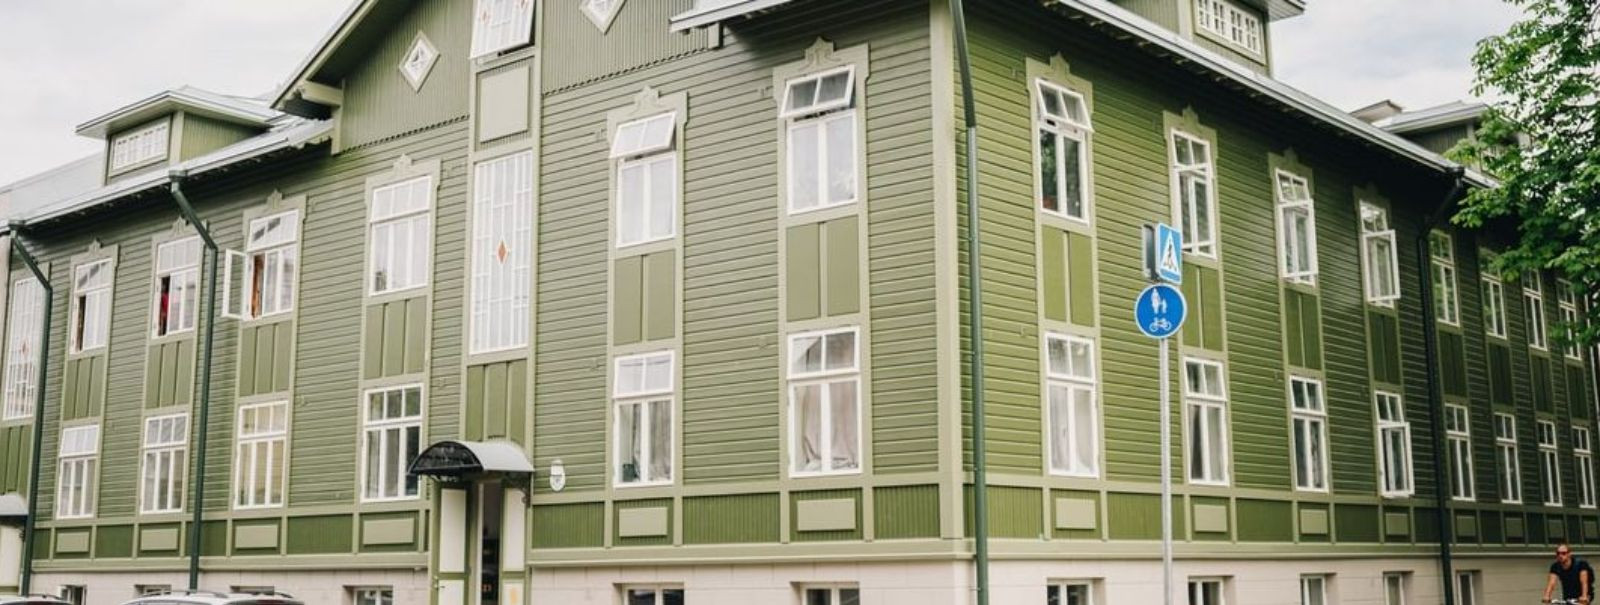 Puitmajad on osa Eesti kultuuripärandist ning nende säilitamine ja taastamine on oluline osa meie ajaloo ja traditsioonide hoidmisest. Alates 2007. aastast on p